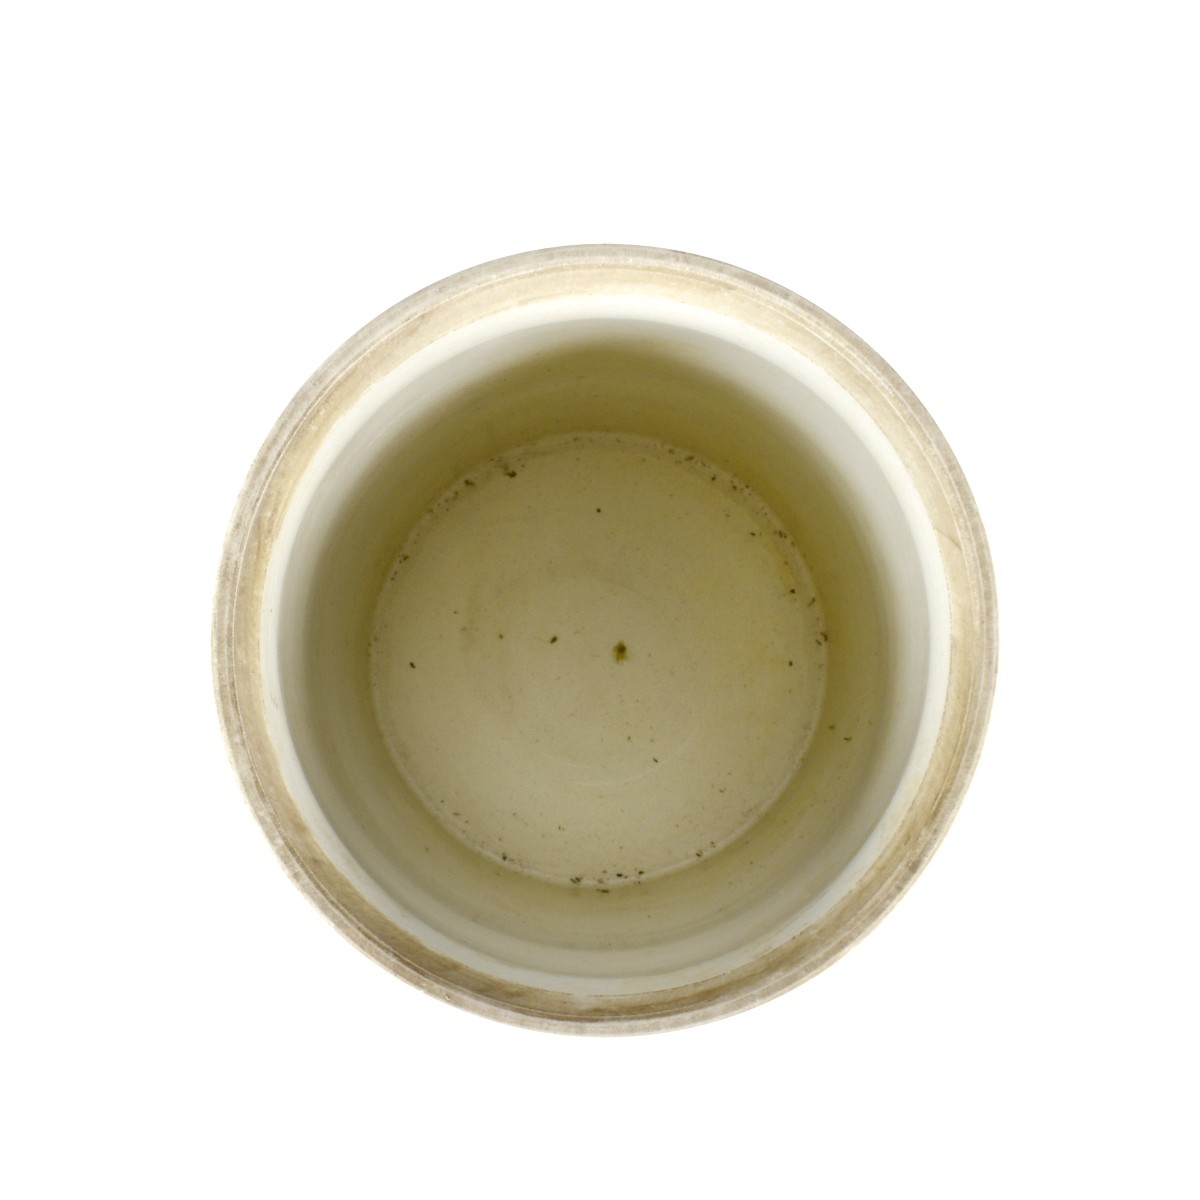 Large Chinese Porcelain Brush Pot